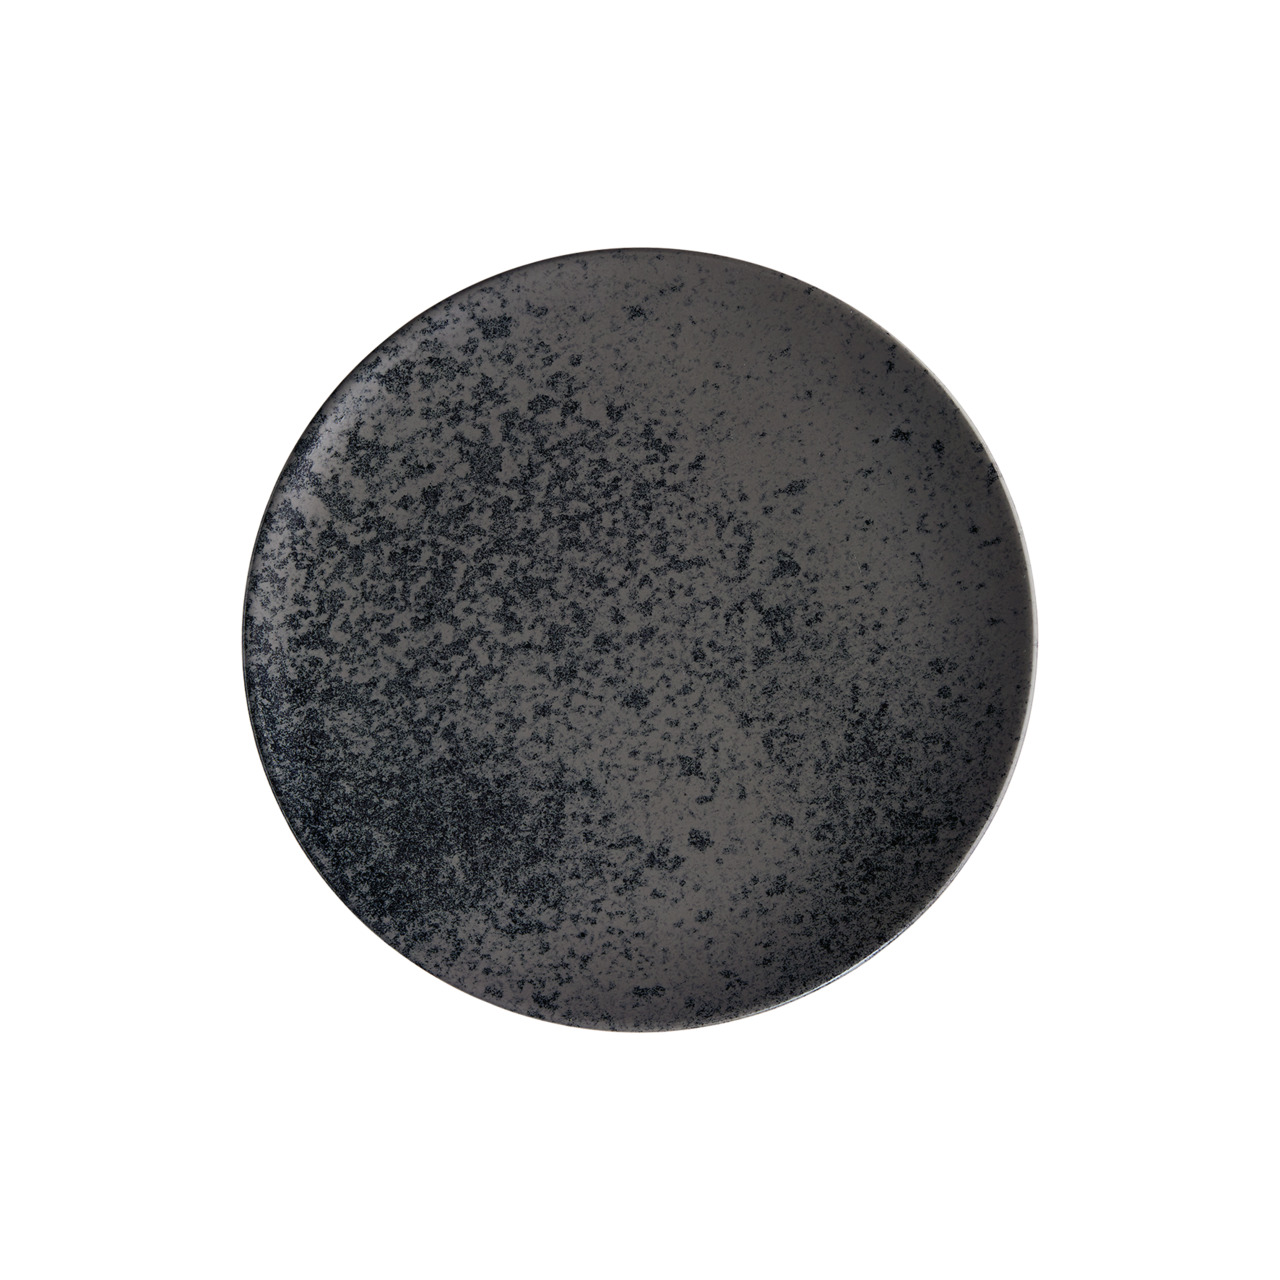 Sandstone, Coupteller flach rund ø 261 mm black